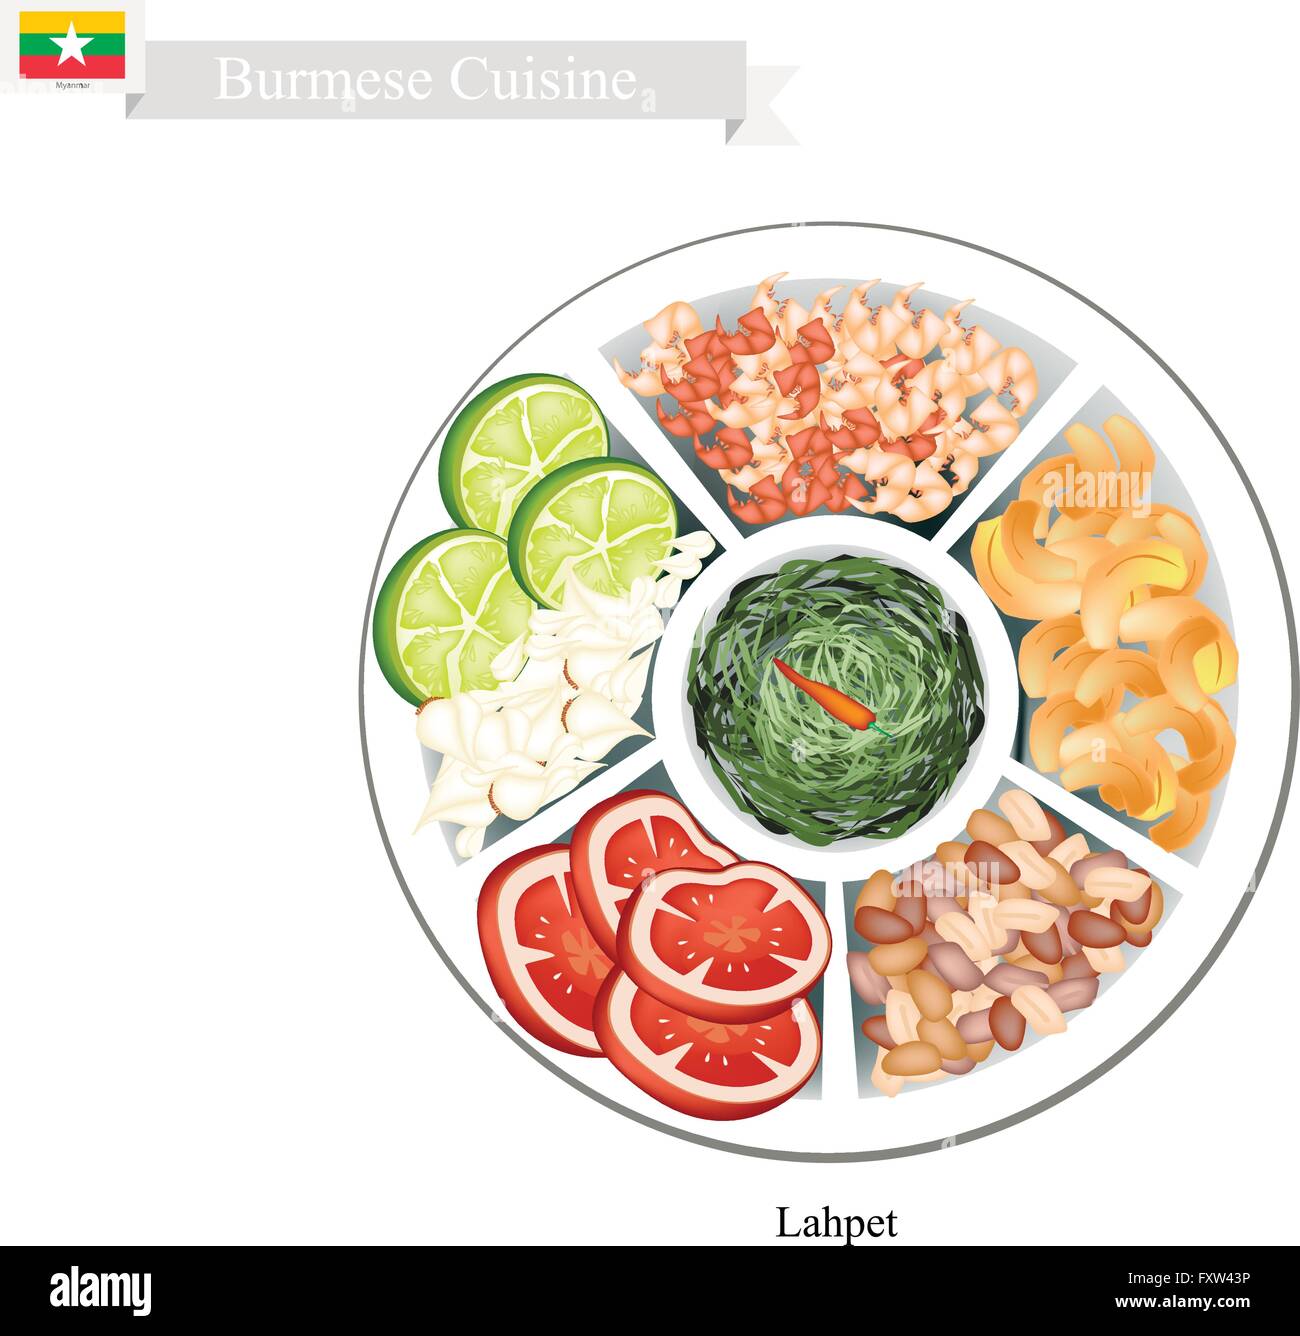 Burmesische Küche, Lahpet oder traditionellen eingelegten grünen Tee Blätter Salat mit verschiedenen Vagetables und Nüssen. Eines der beliebtesten Stock Vektor